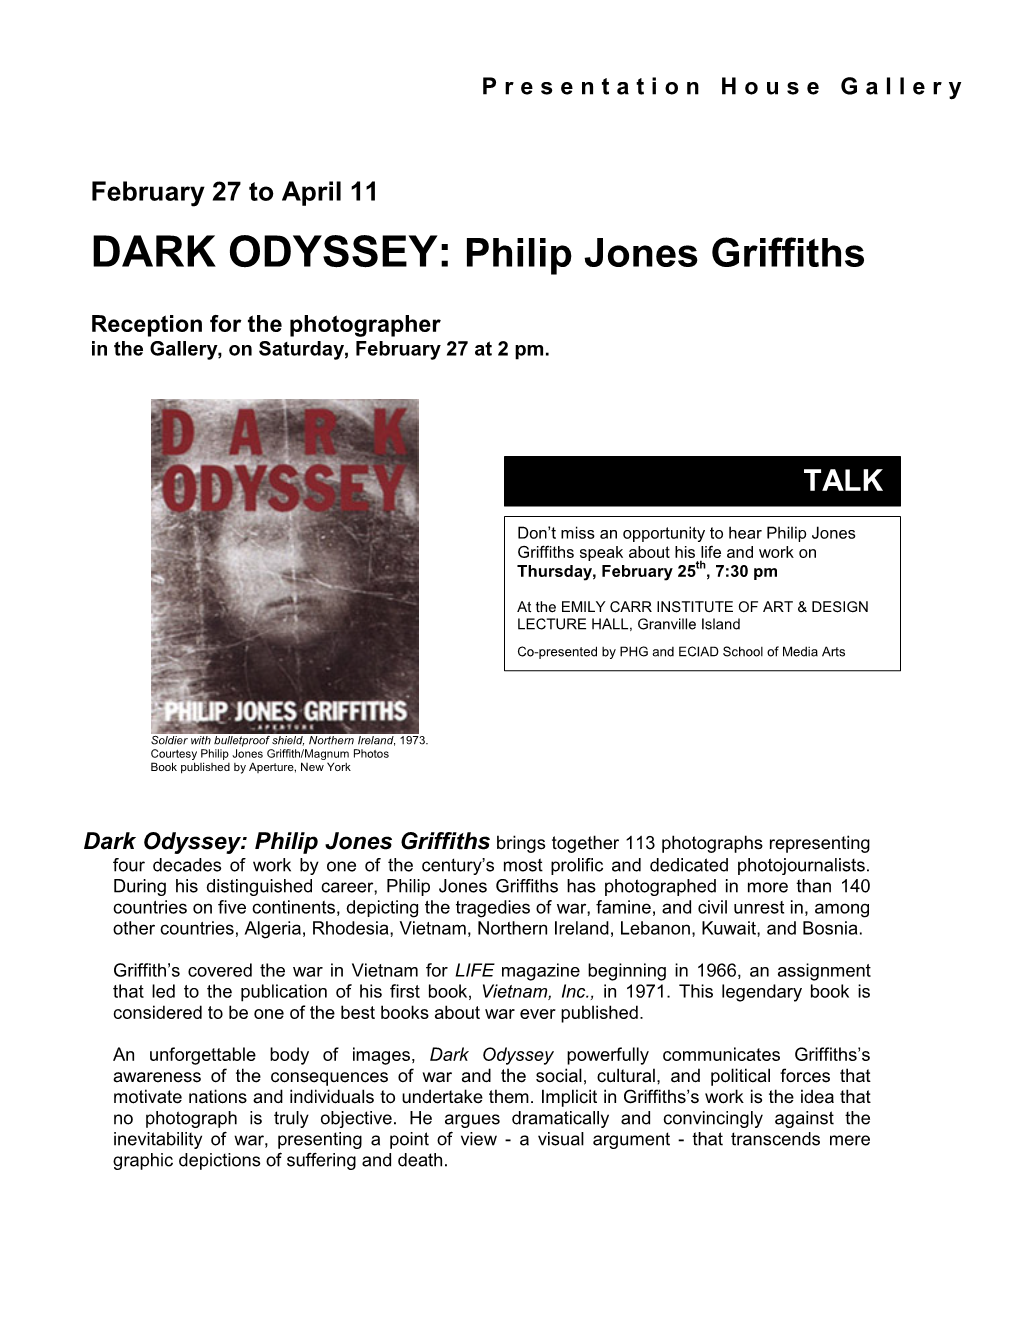 DARK ODYSSEY: Philip Jones Griffiths